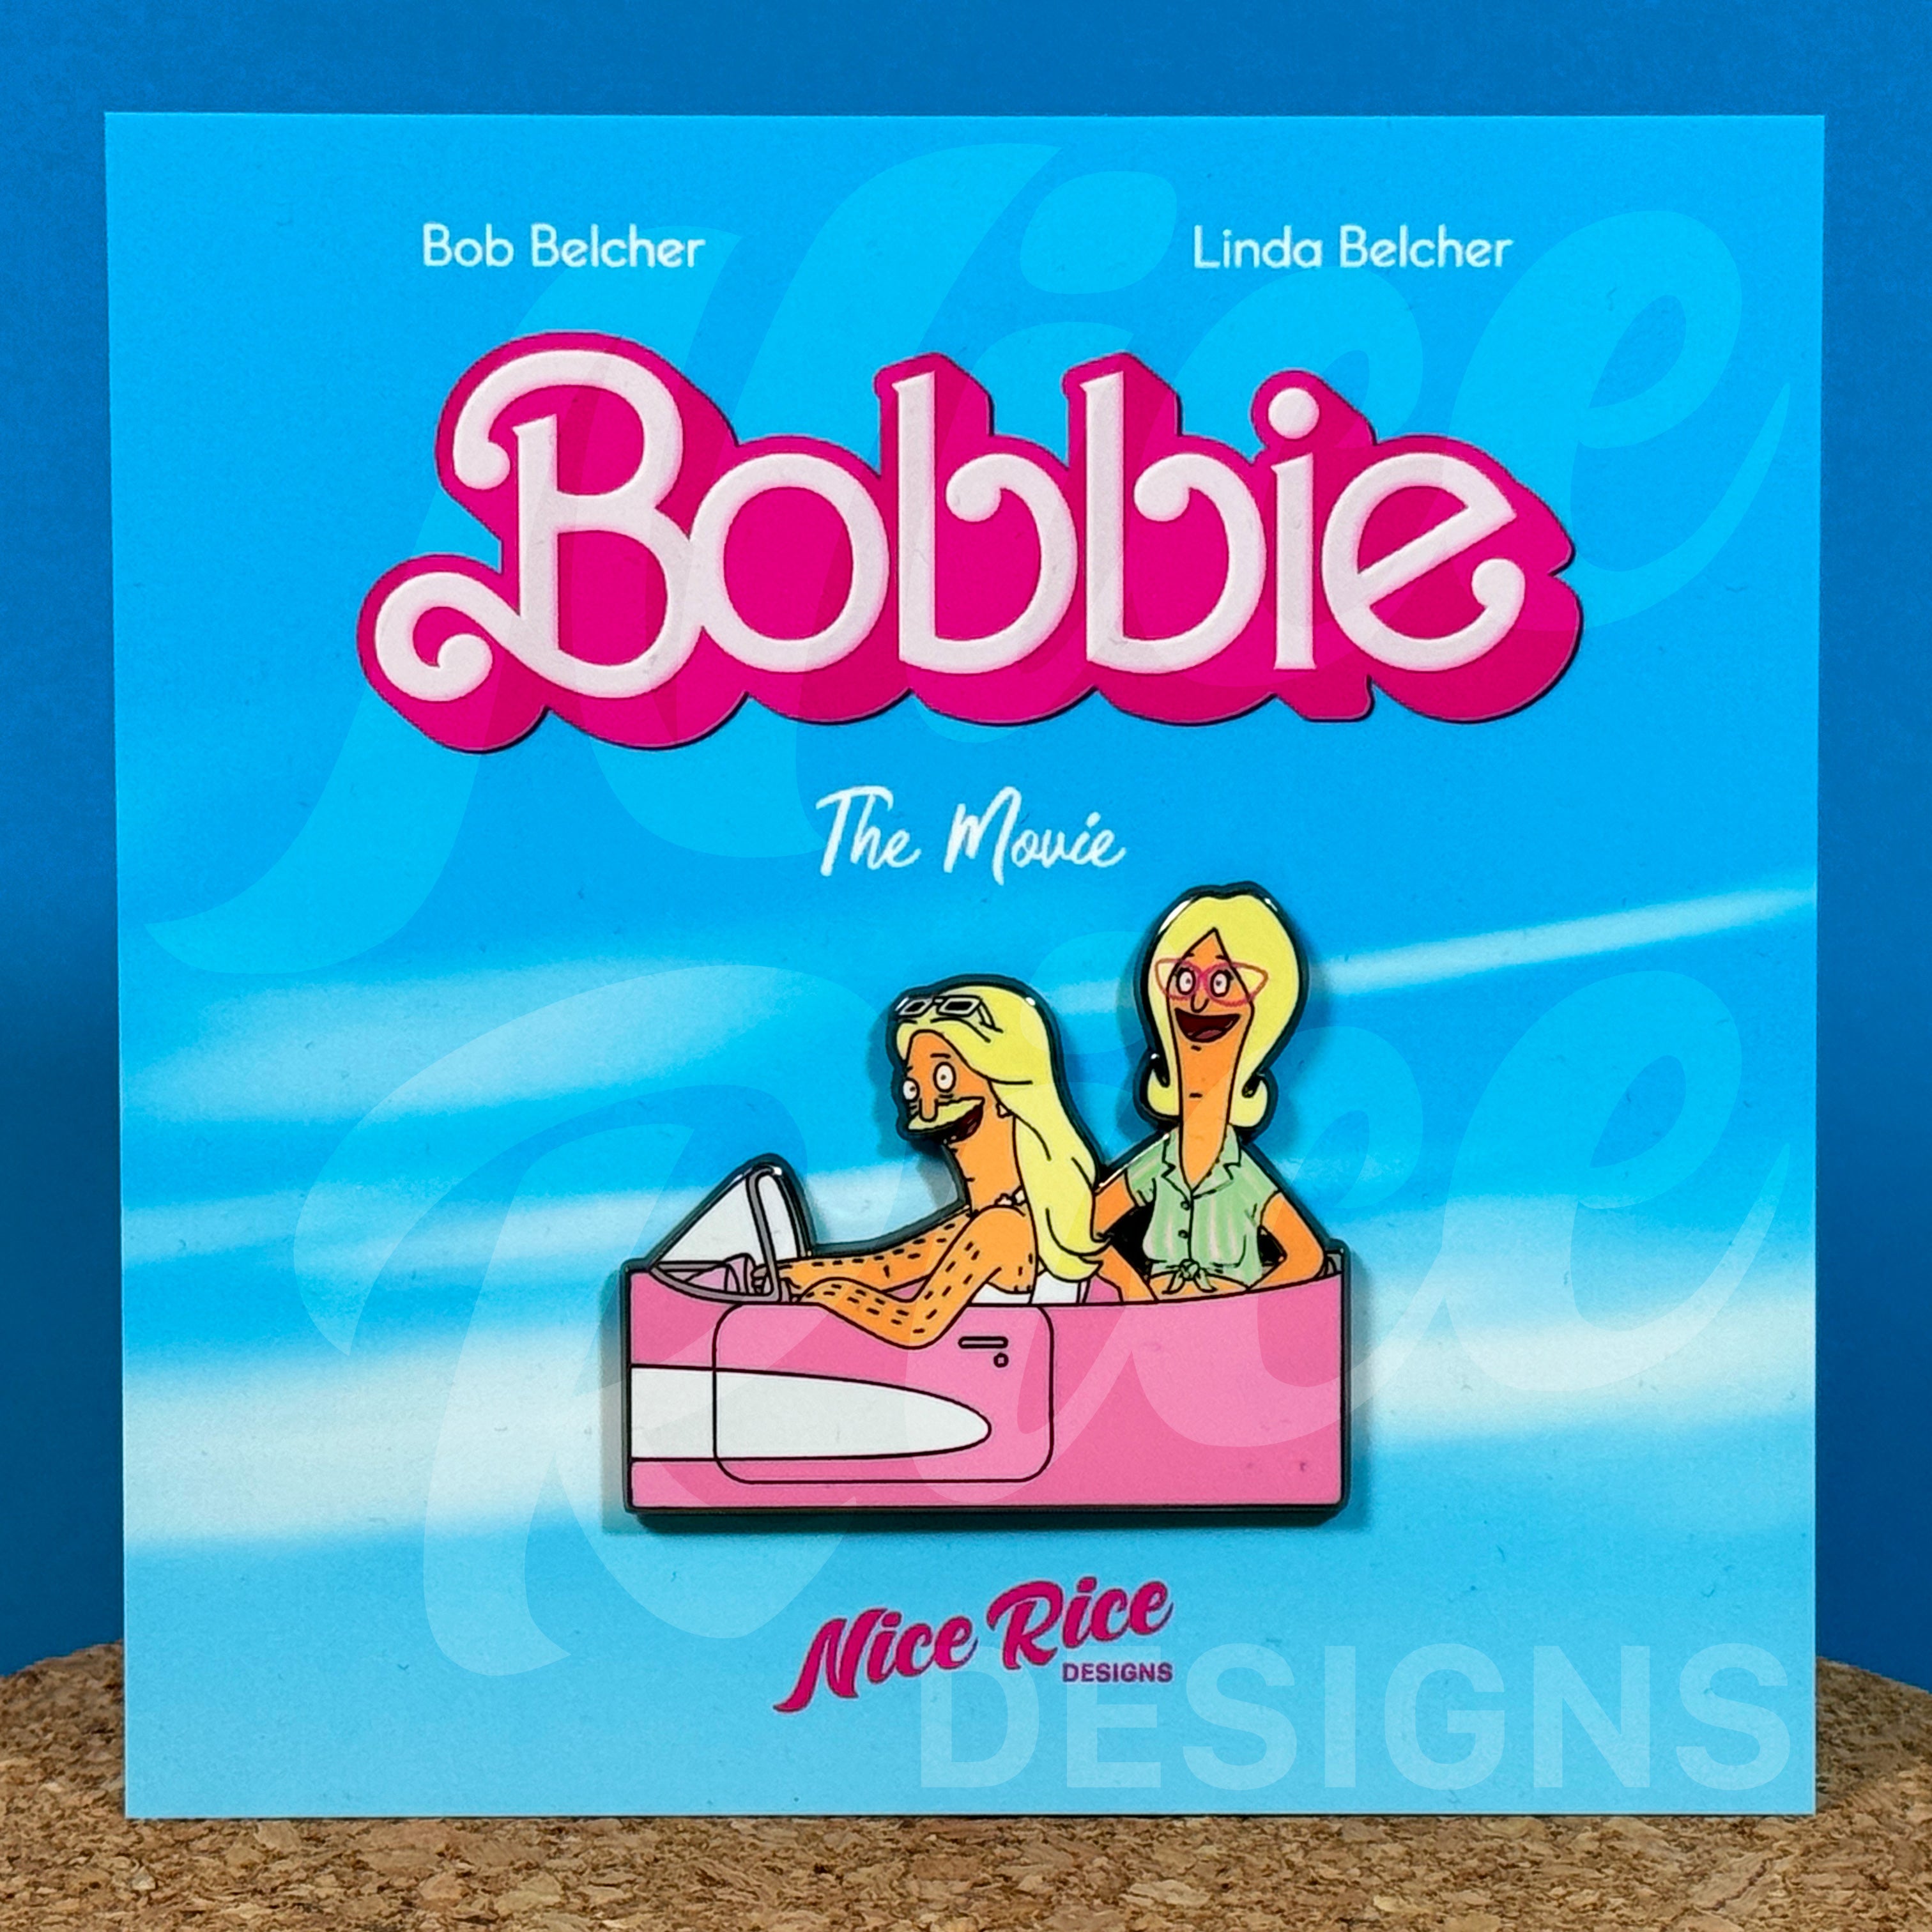 Bobbie Pin